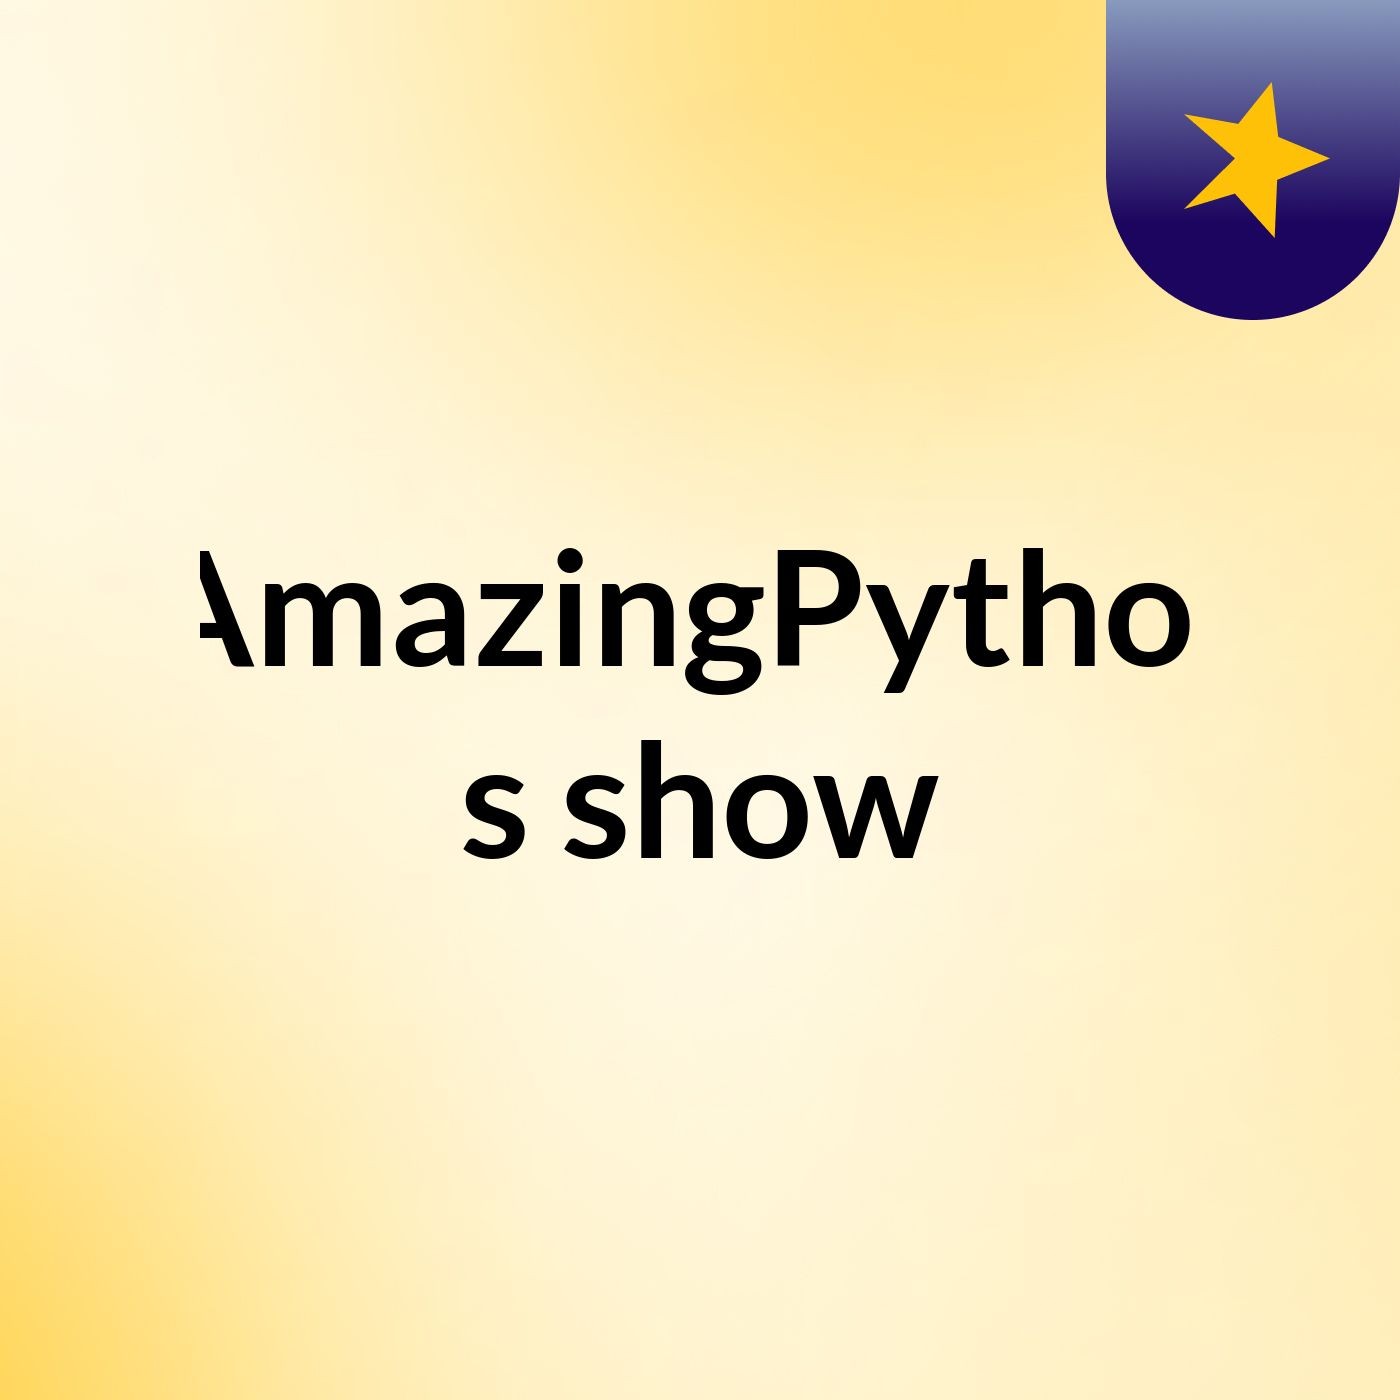 AmazingPythor's show